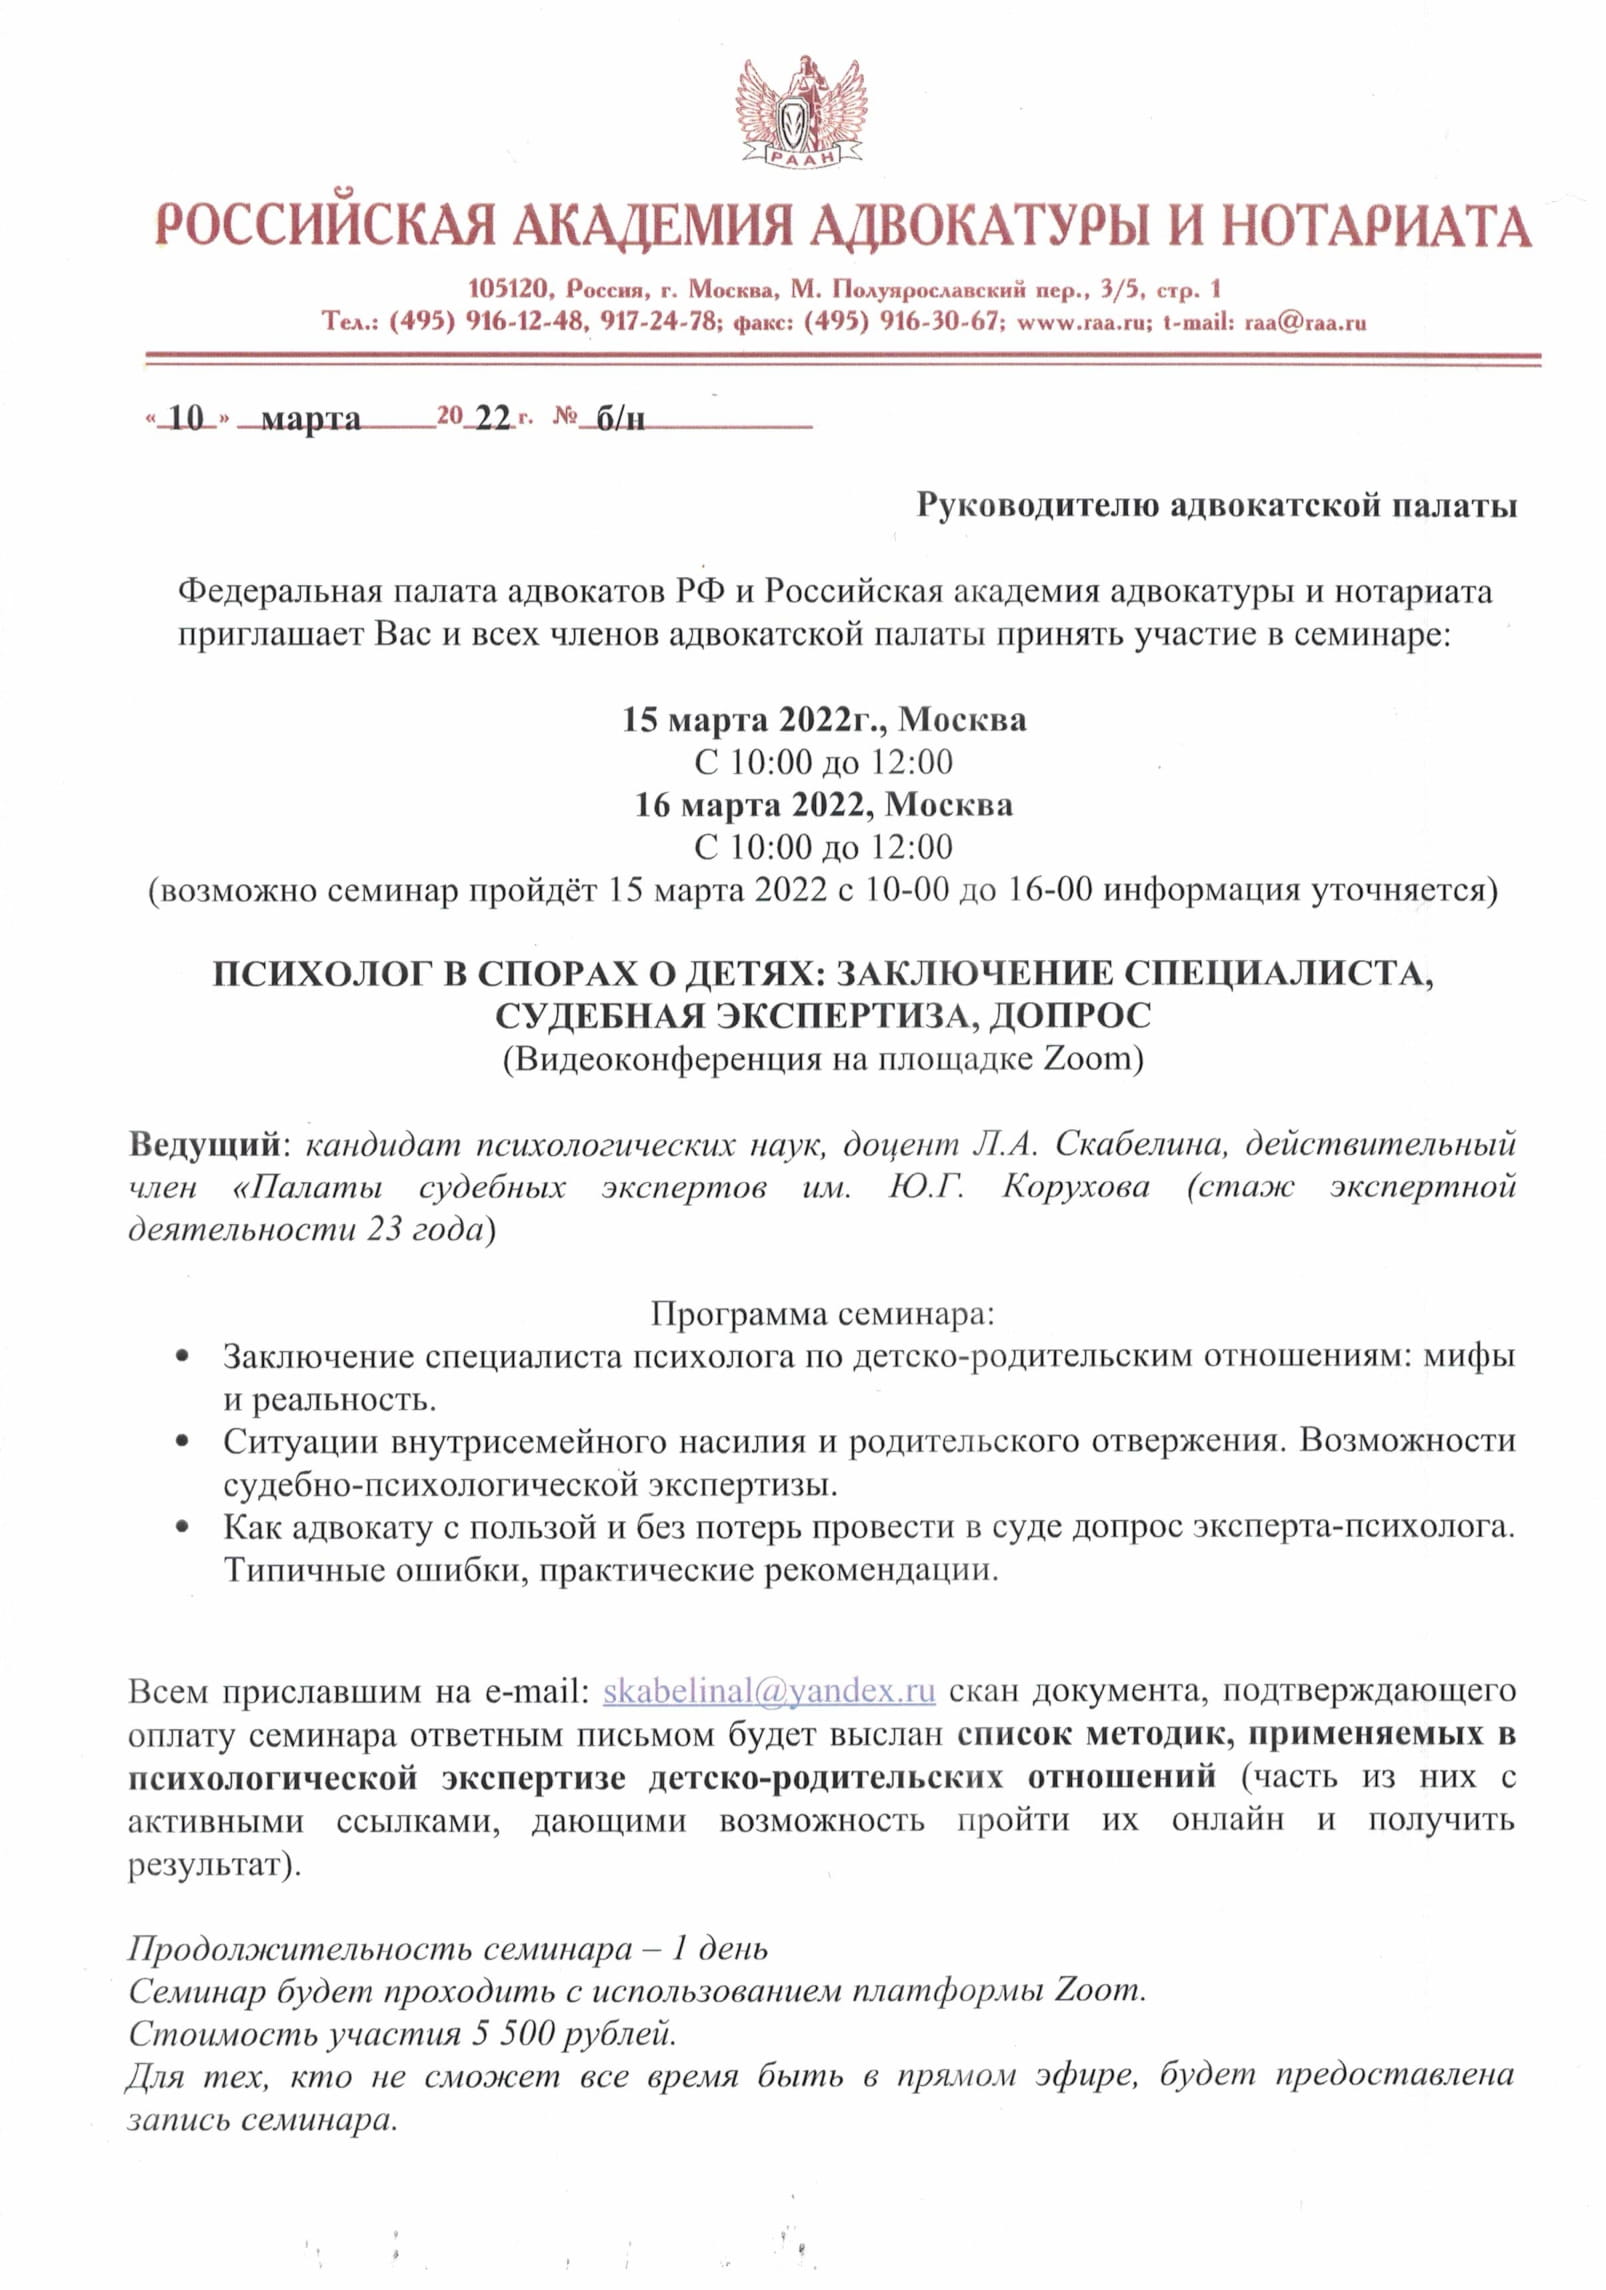  Курсы повышения квалификации адвокатов 15.03.22 г., перенесено на 22.03.2022 г.